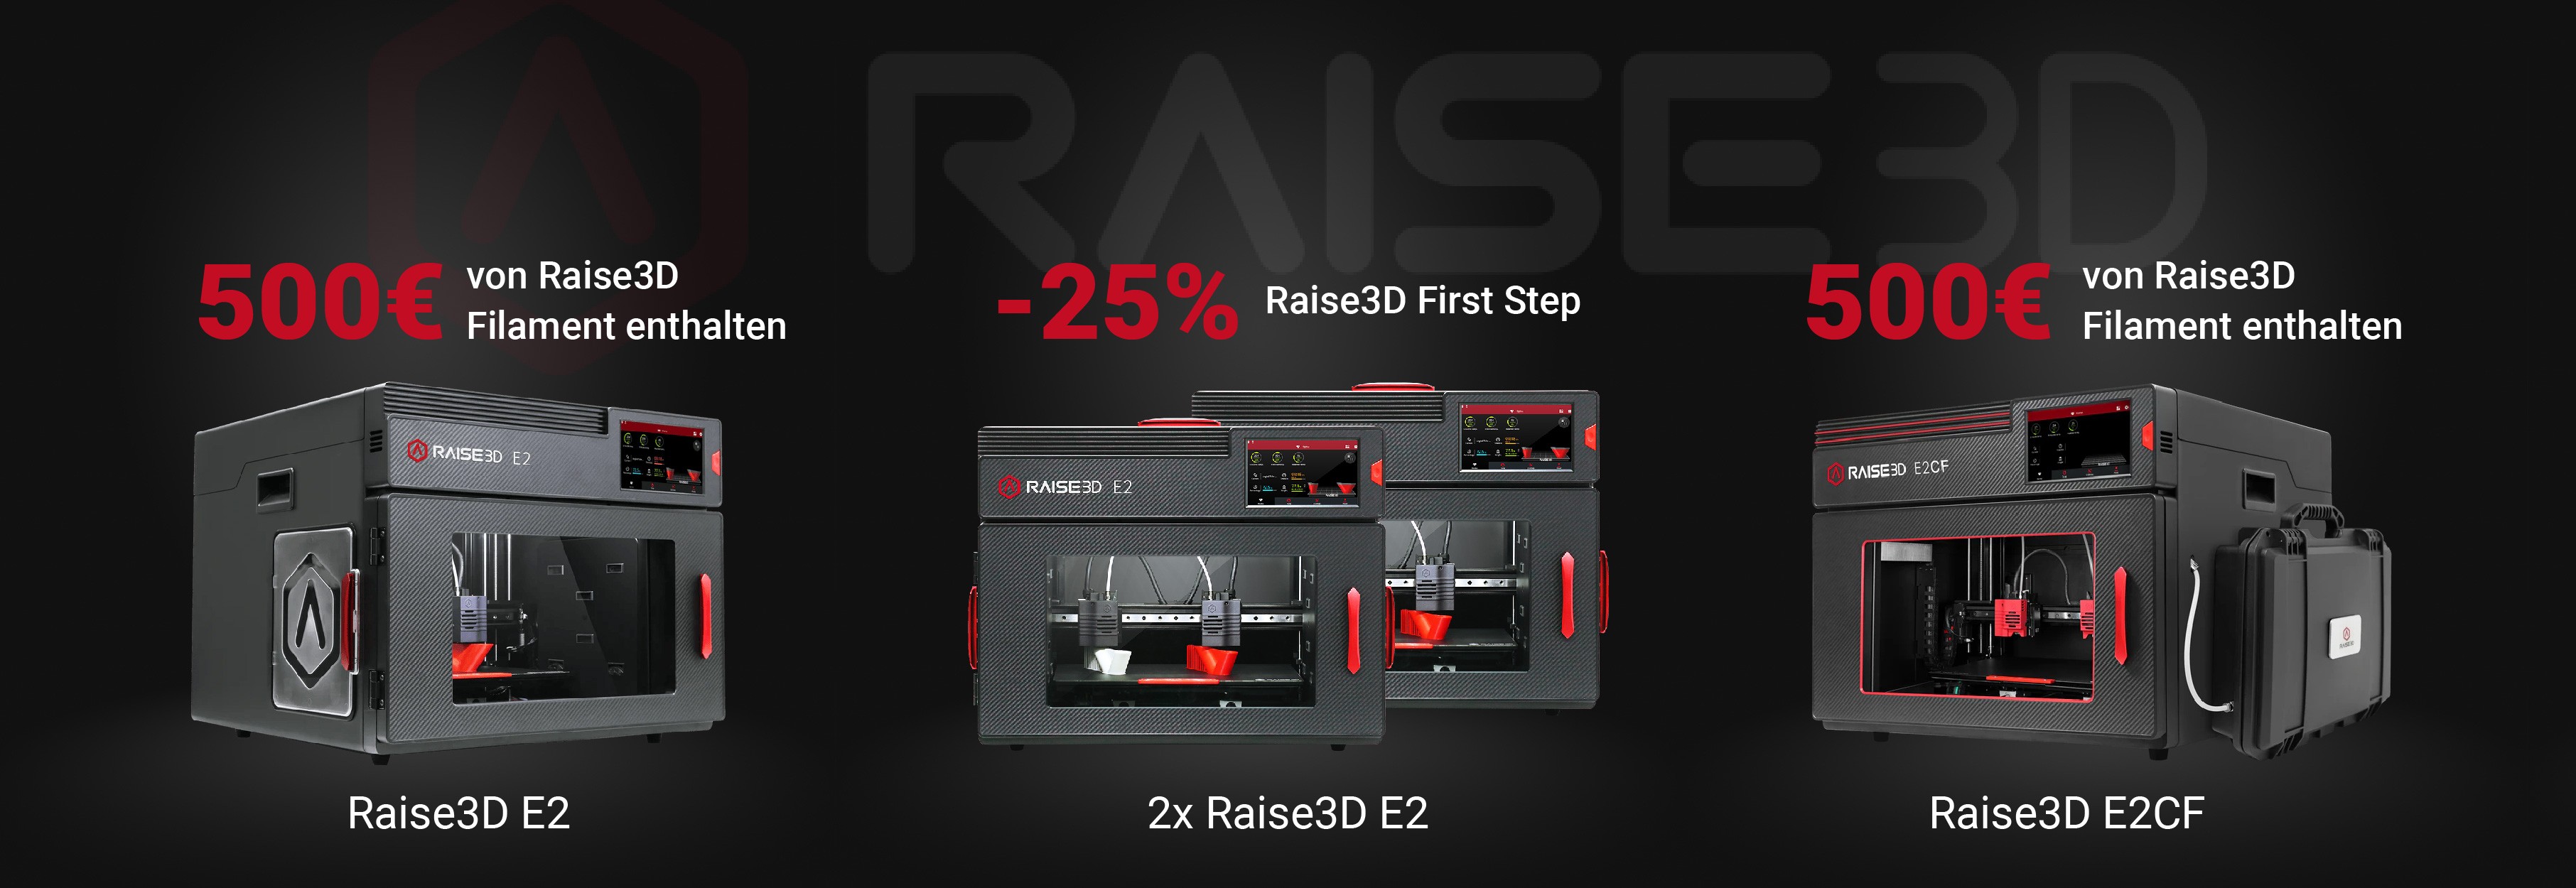 Angebot Raise3D E2 & E2CF